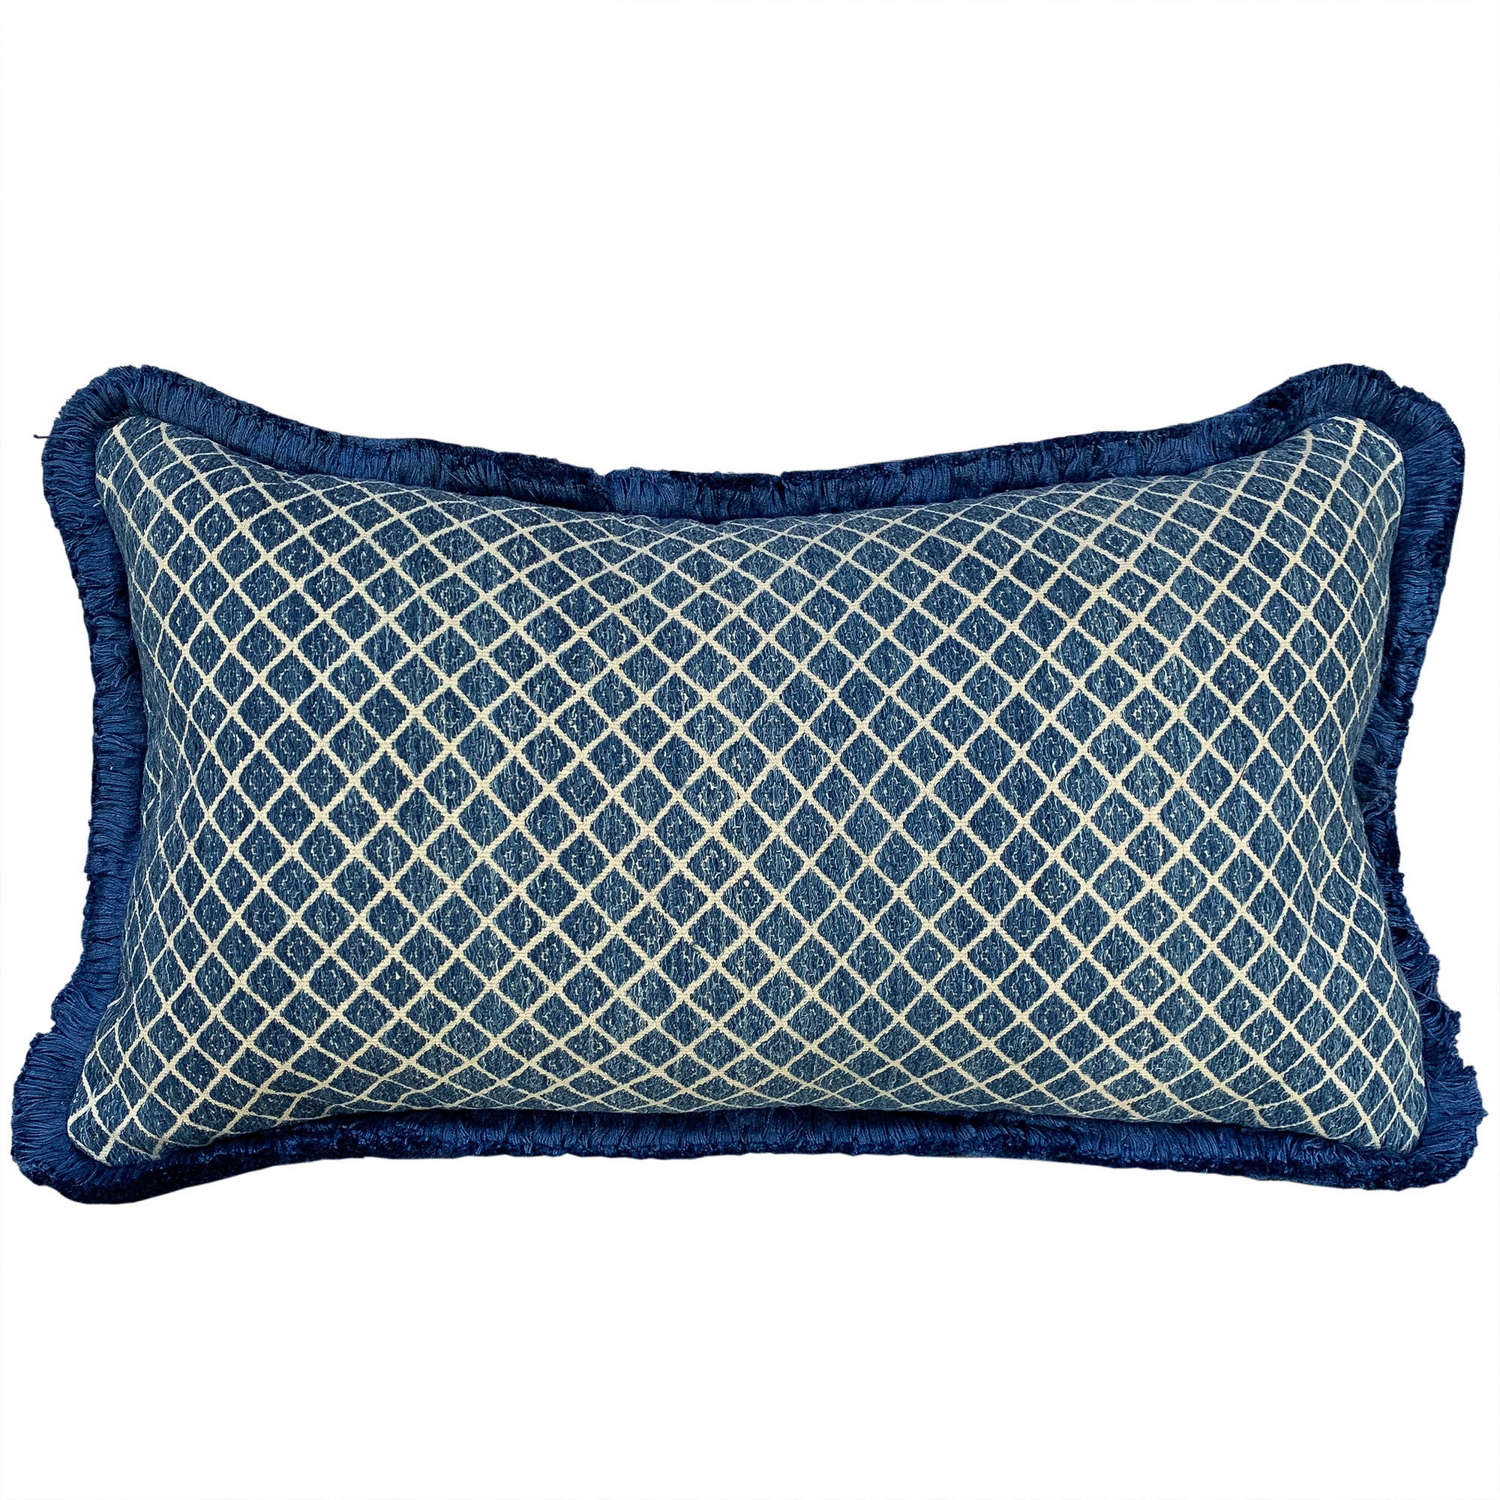 Zhuang cushion with blue fringe trim